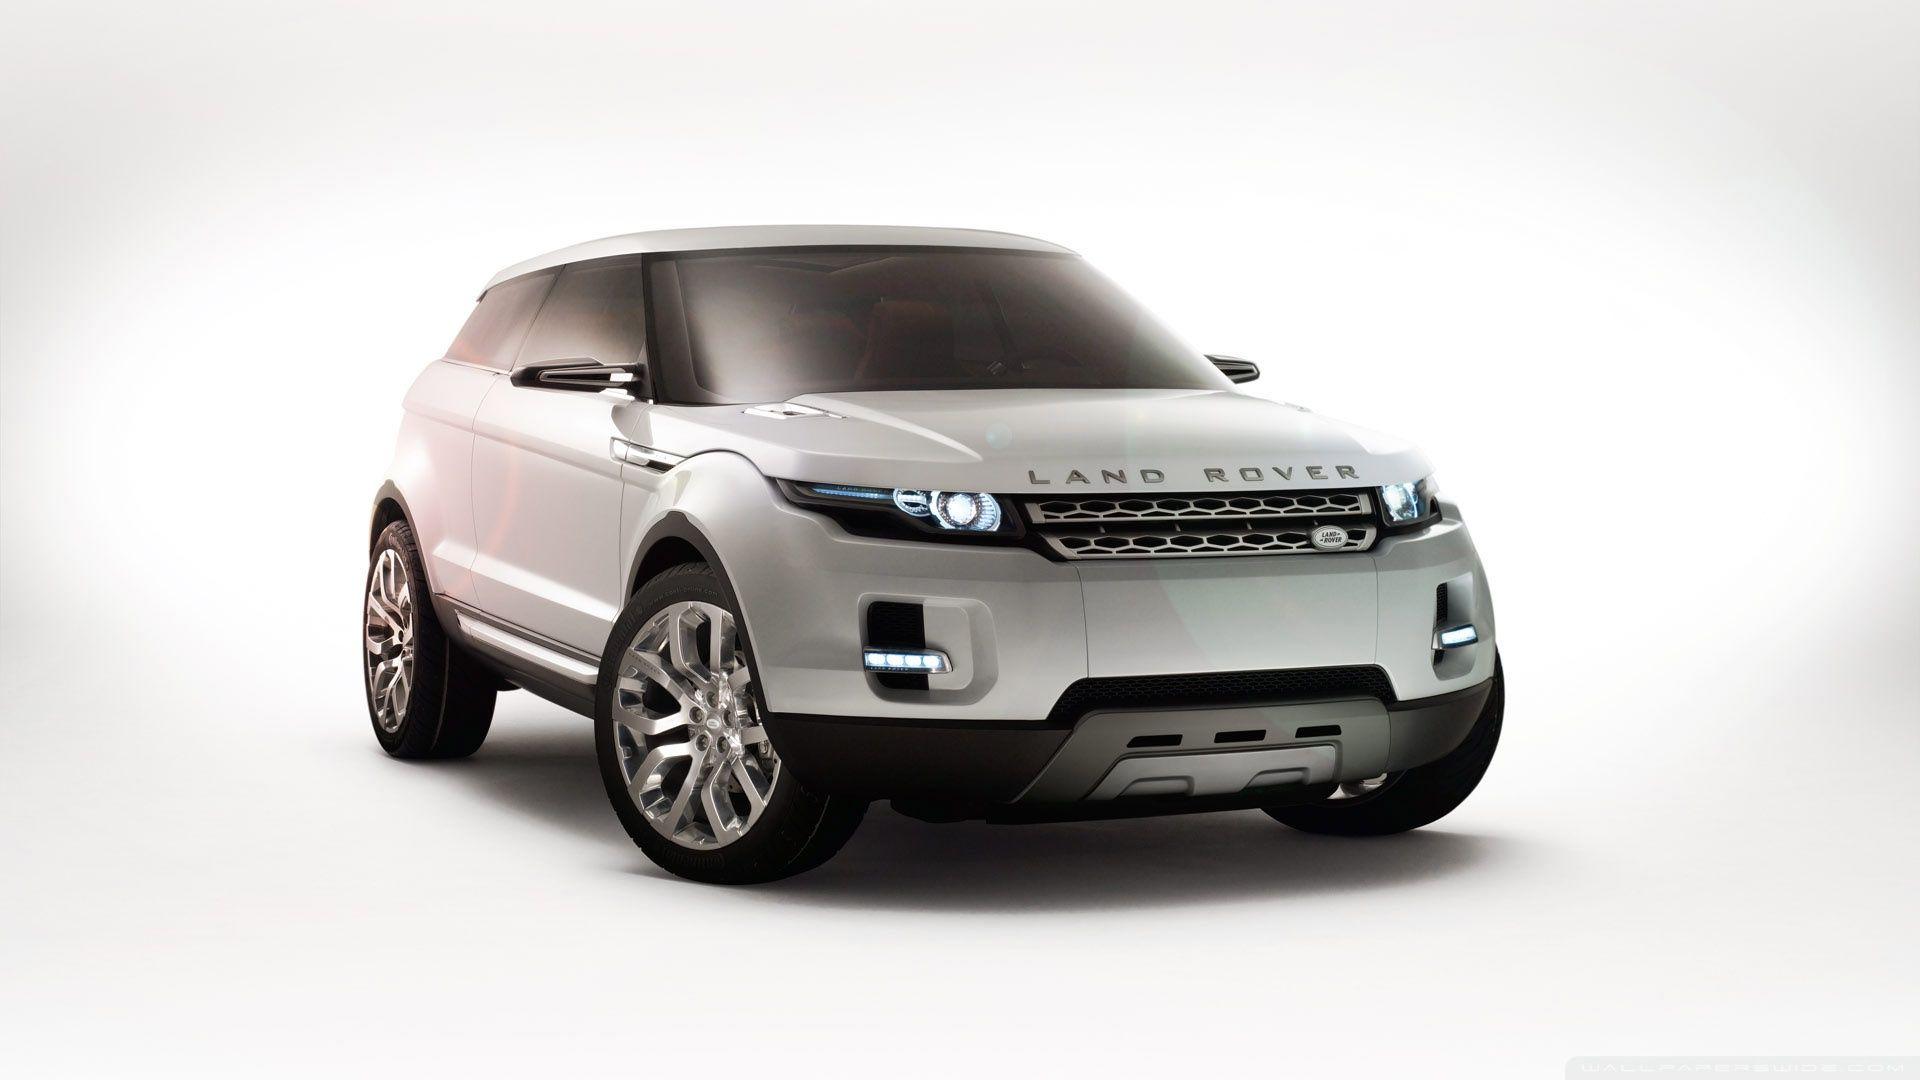 Land Rover HD desktop wallpaper, Widescreen, High Definition